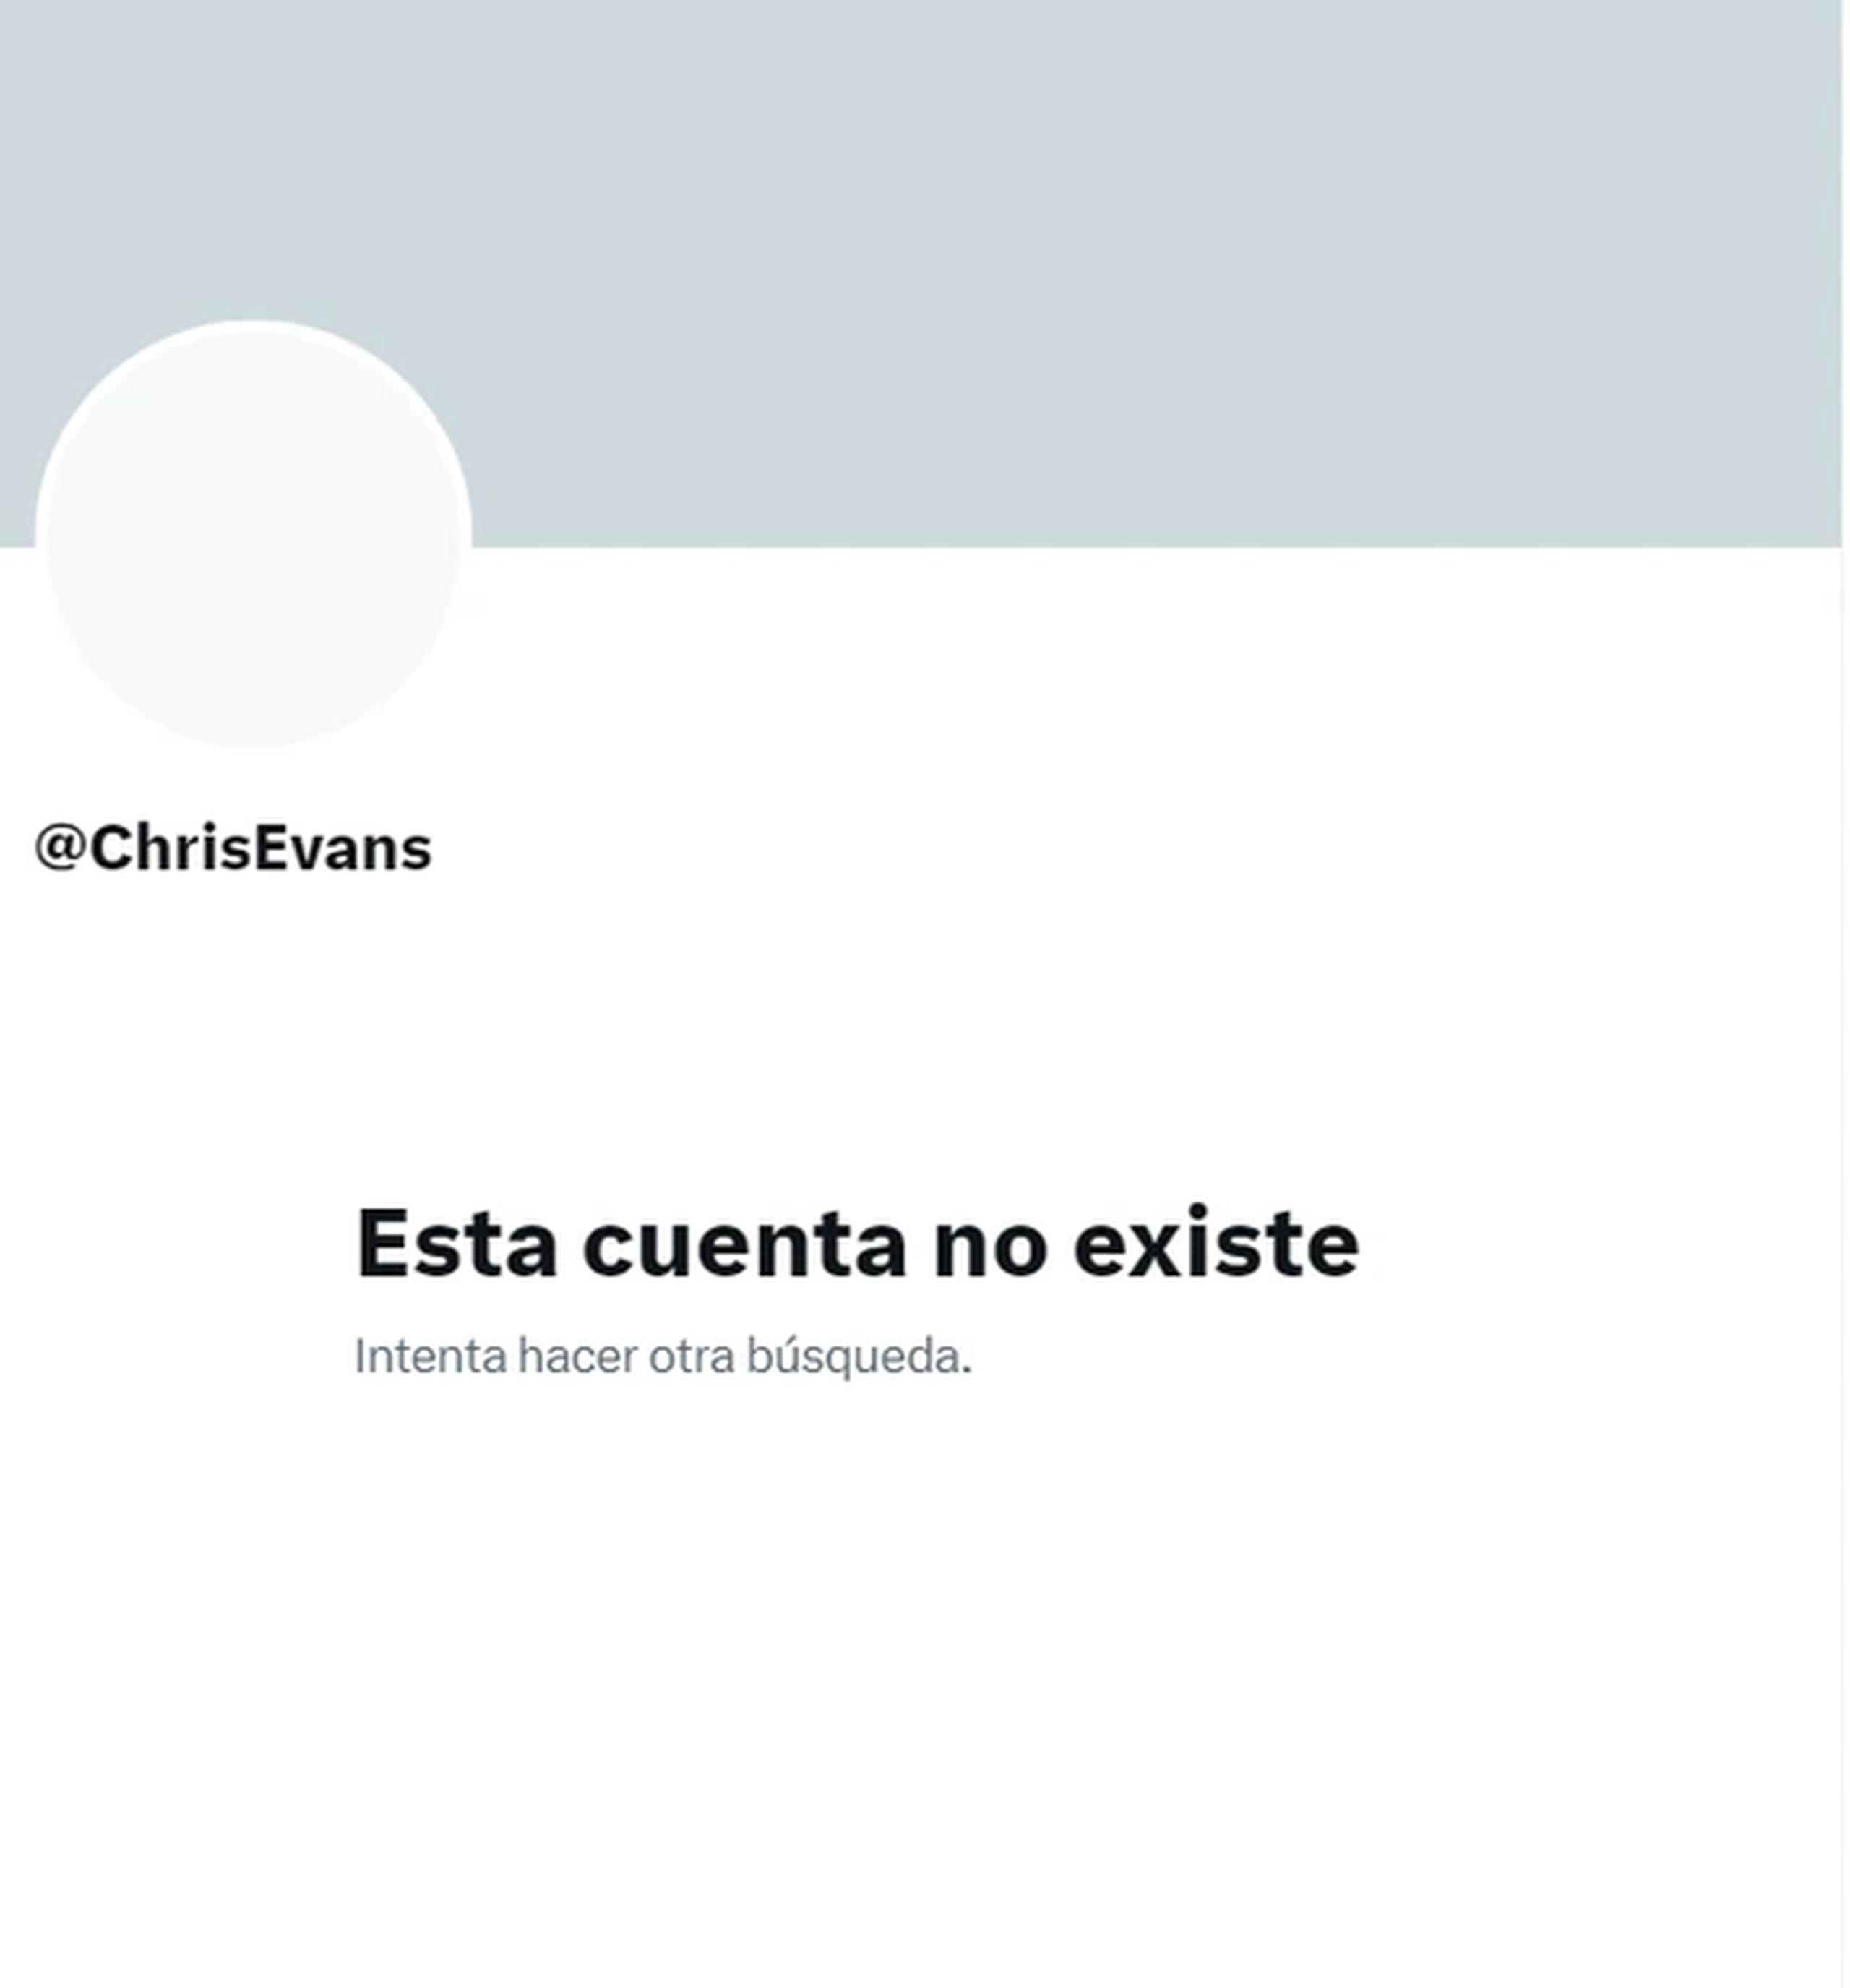 Chris Evans decidió cerrar sus cuentas oficiales de Twitter e Instagram para regalarse "un verano con menos tiempo frente a la pantalla".